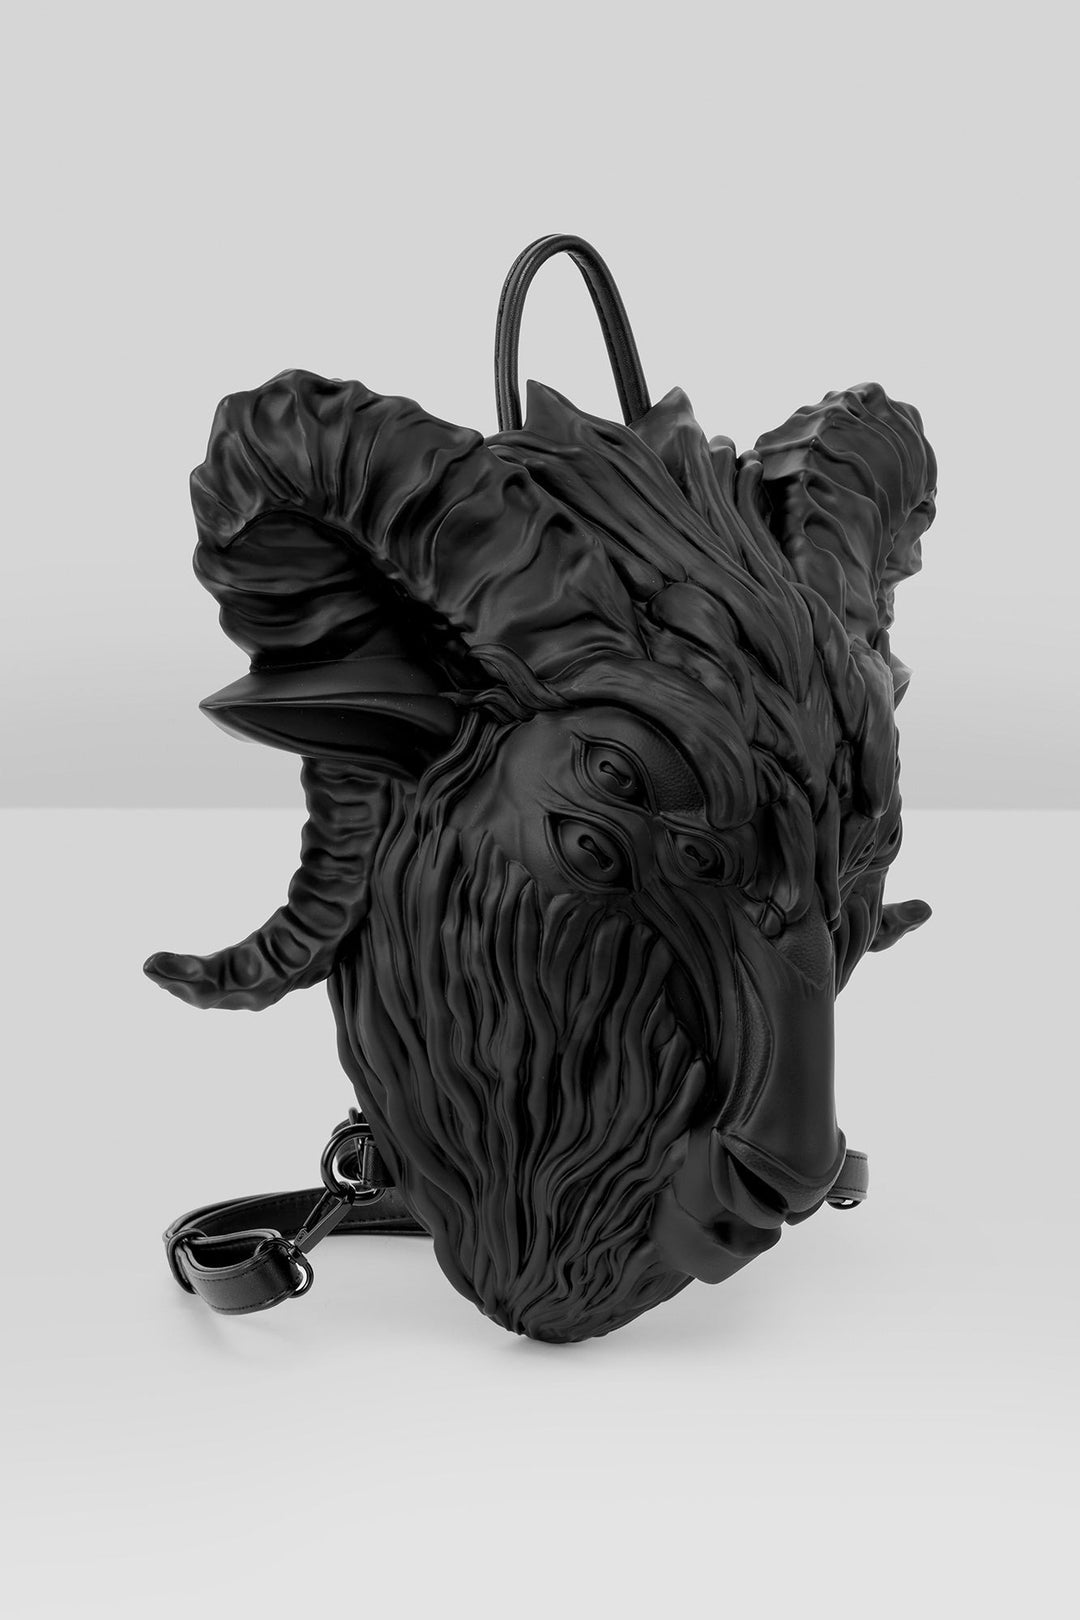 creepy backpack